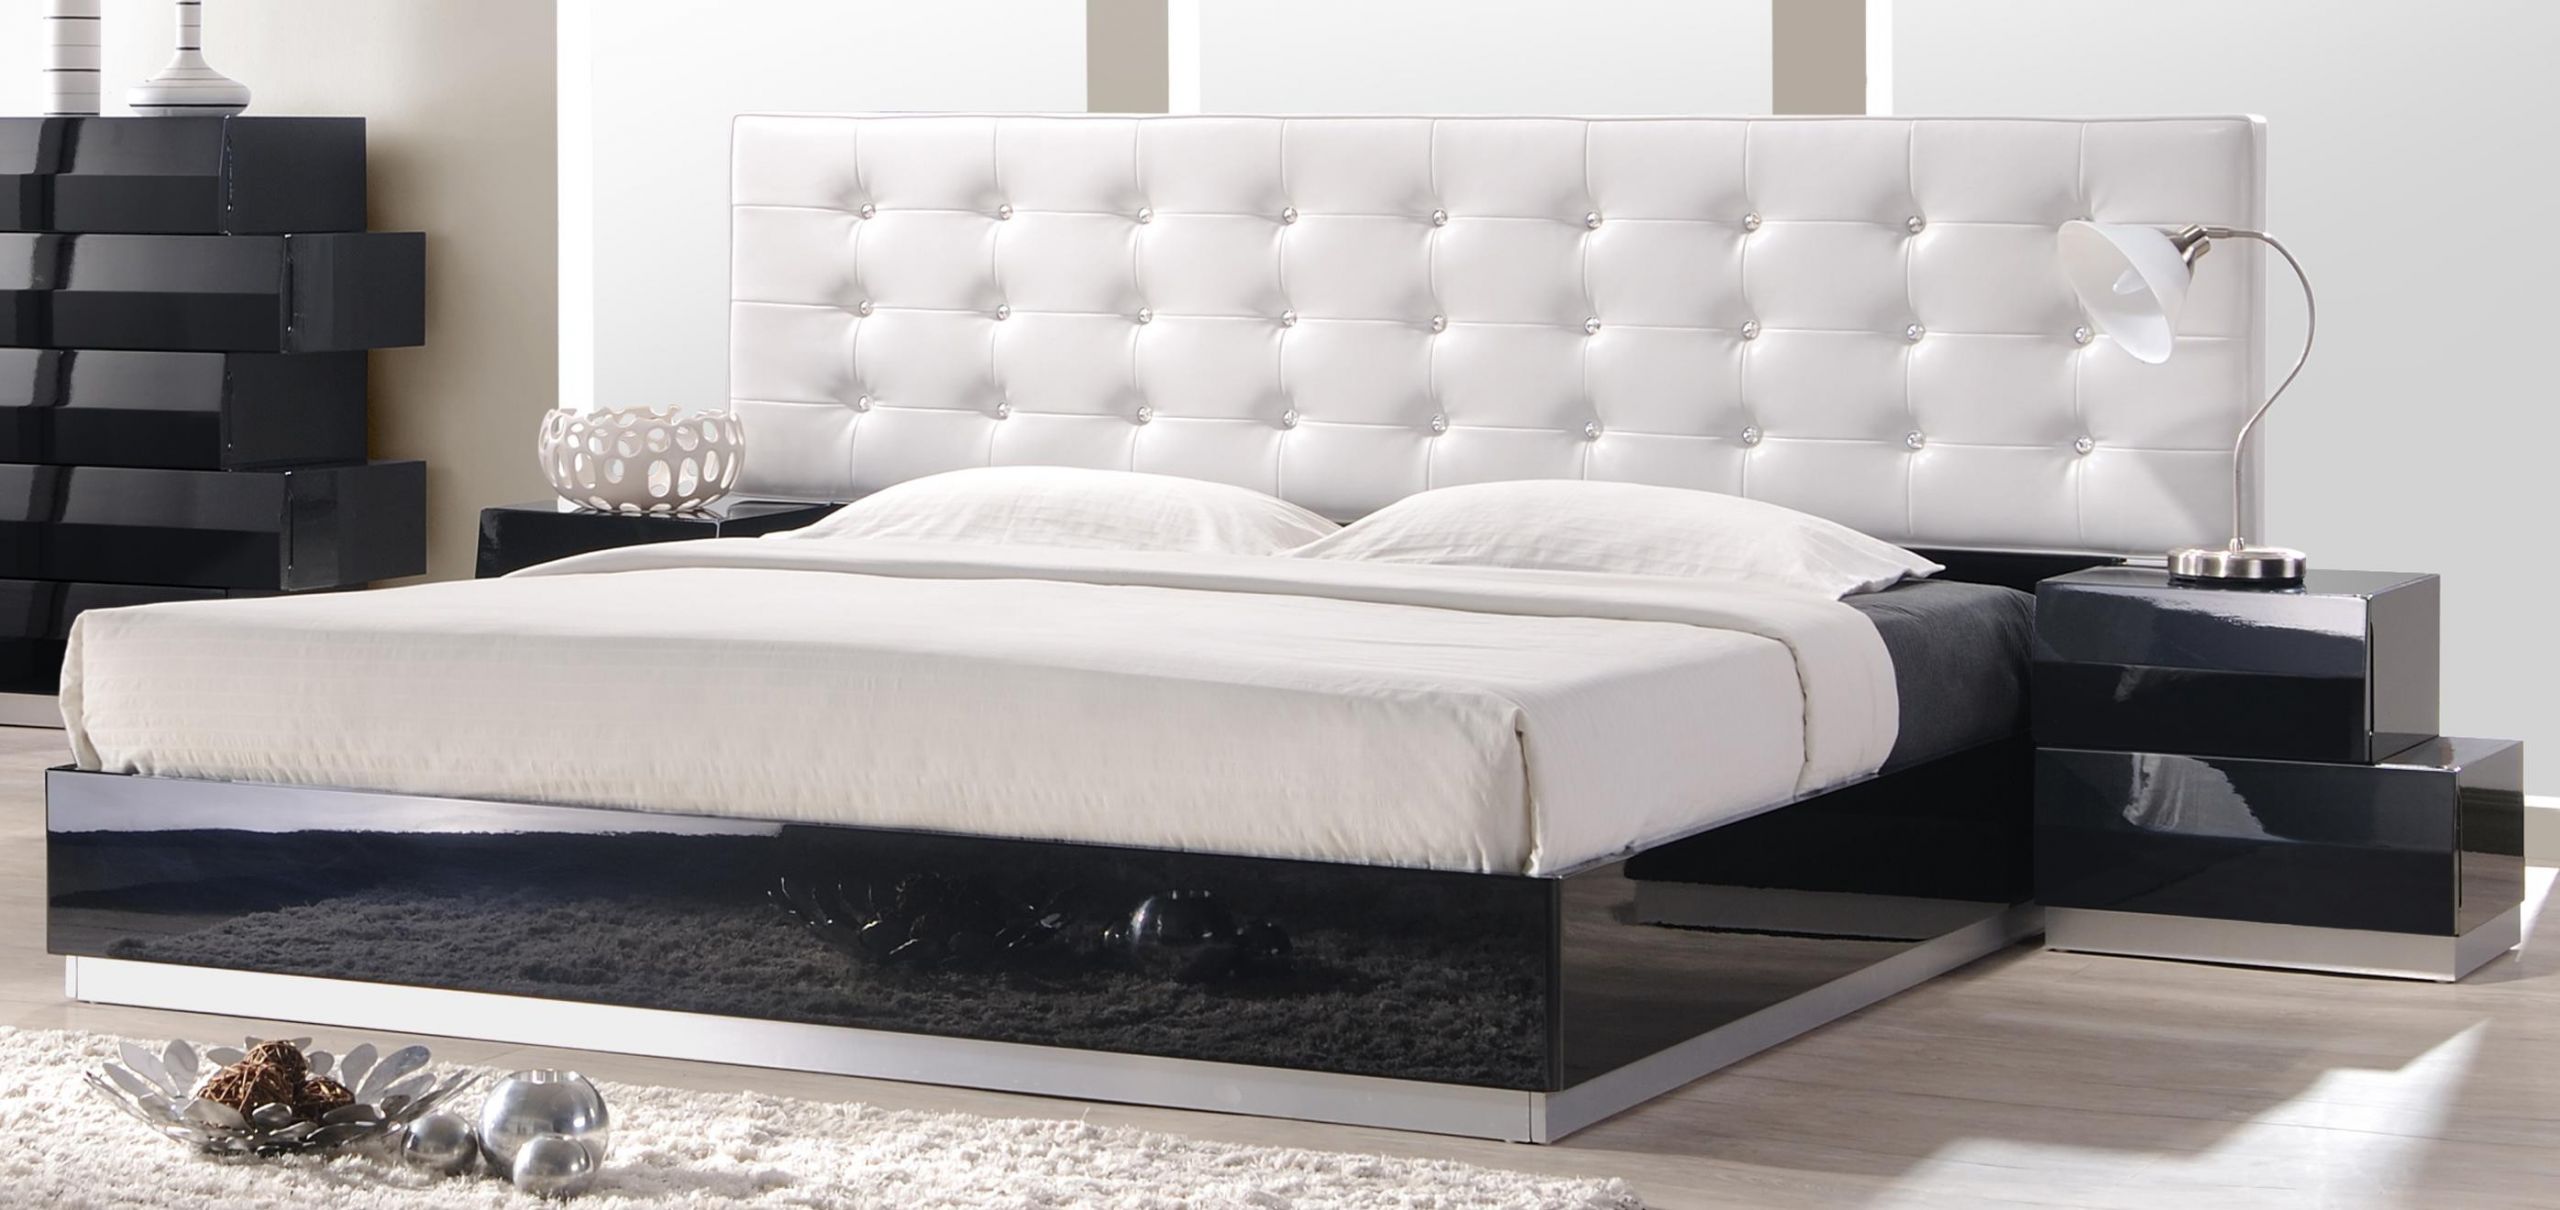 Modern King Size Bedroom Sets
 ALIYA KING SIZE MODERN LEATHERETTE WHITE BLACK